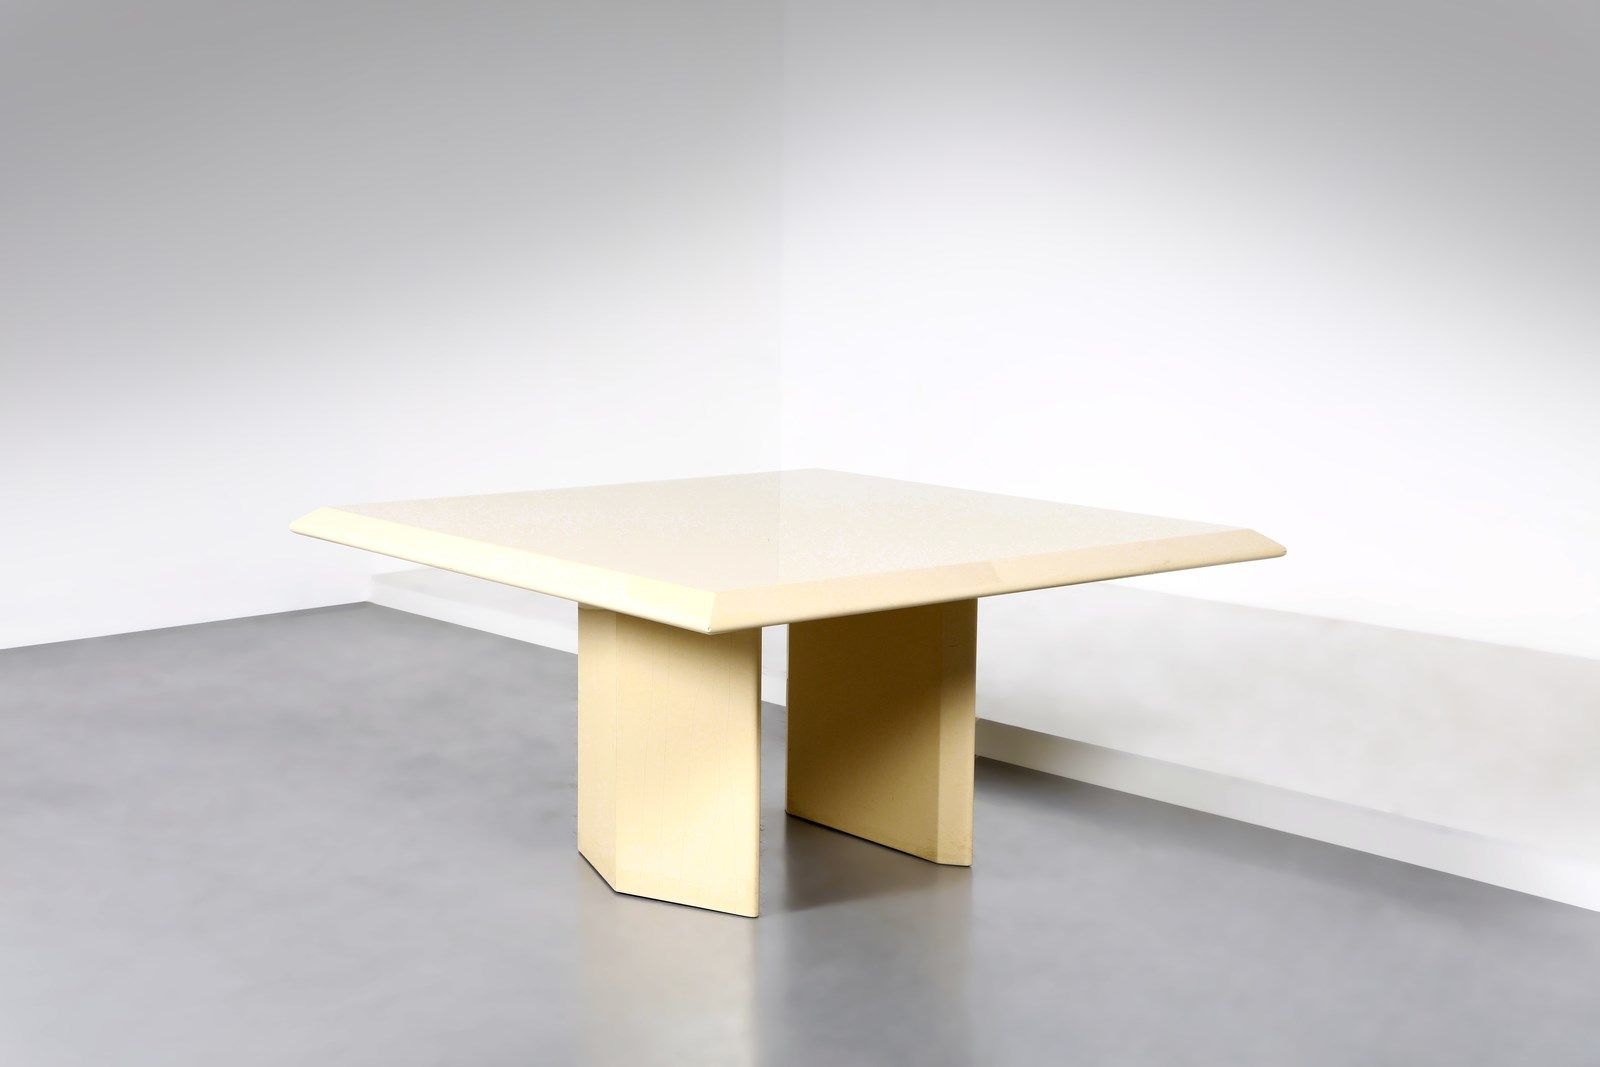 Manifattura Italiana MANIFATTURA ITALIANA 桌子。漆面木材。Cm 155.00 x 75.00 x 155.00. 19&hellip;